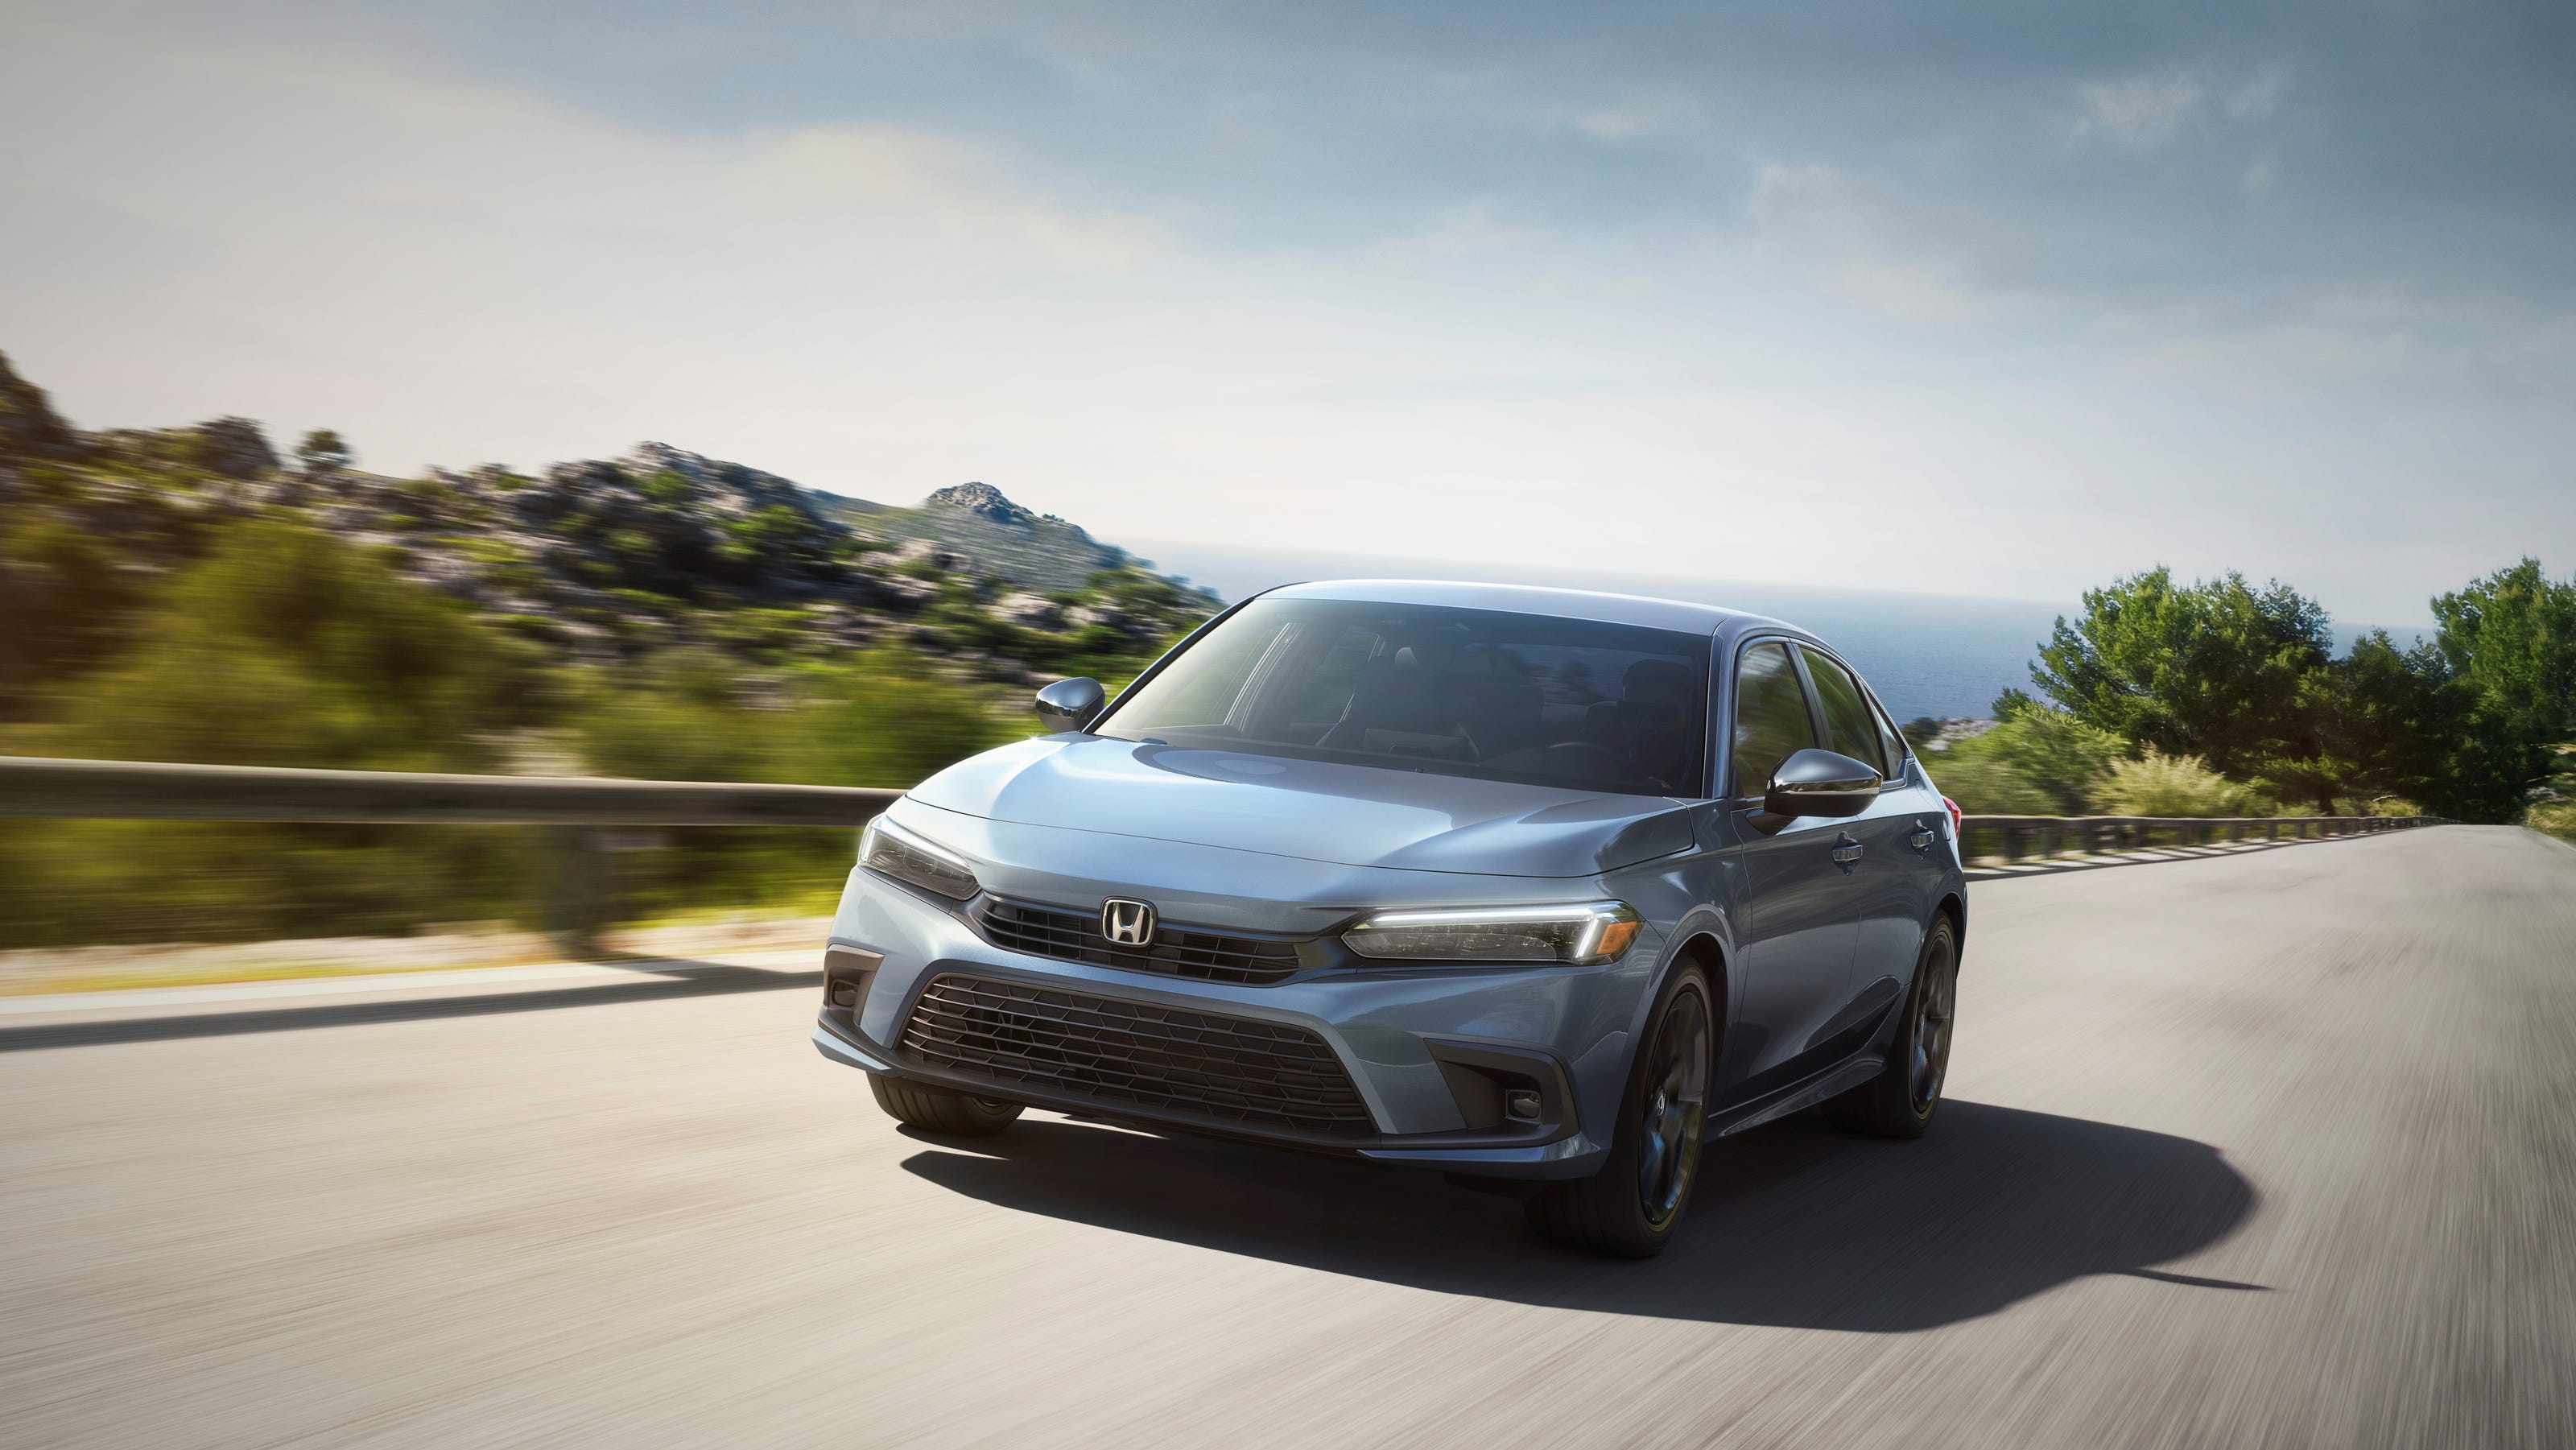 Honda Civic 2022 Redesigned Honda Reveals New Compact Car